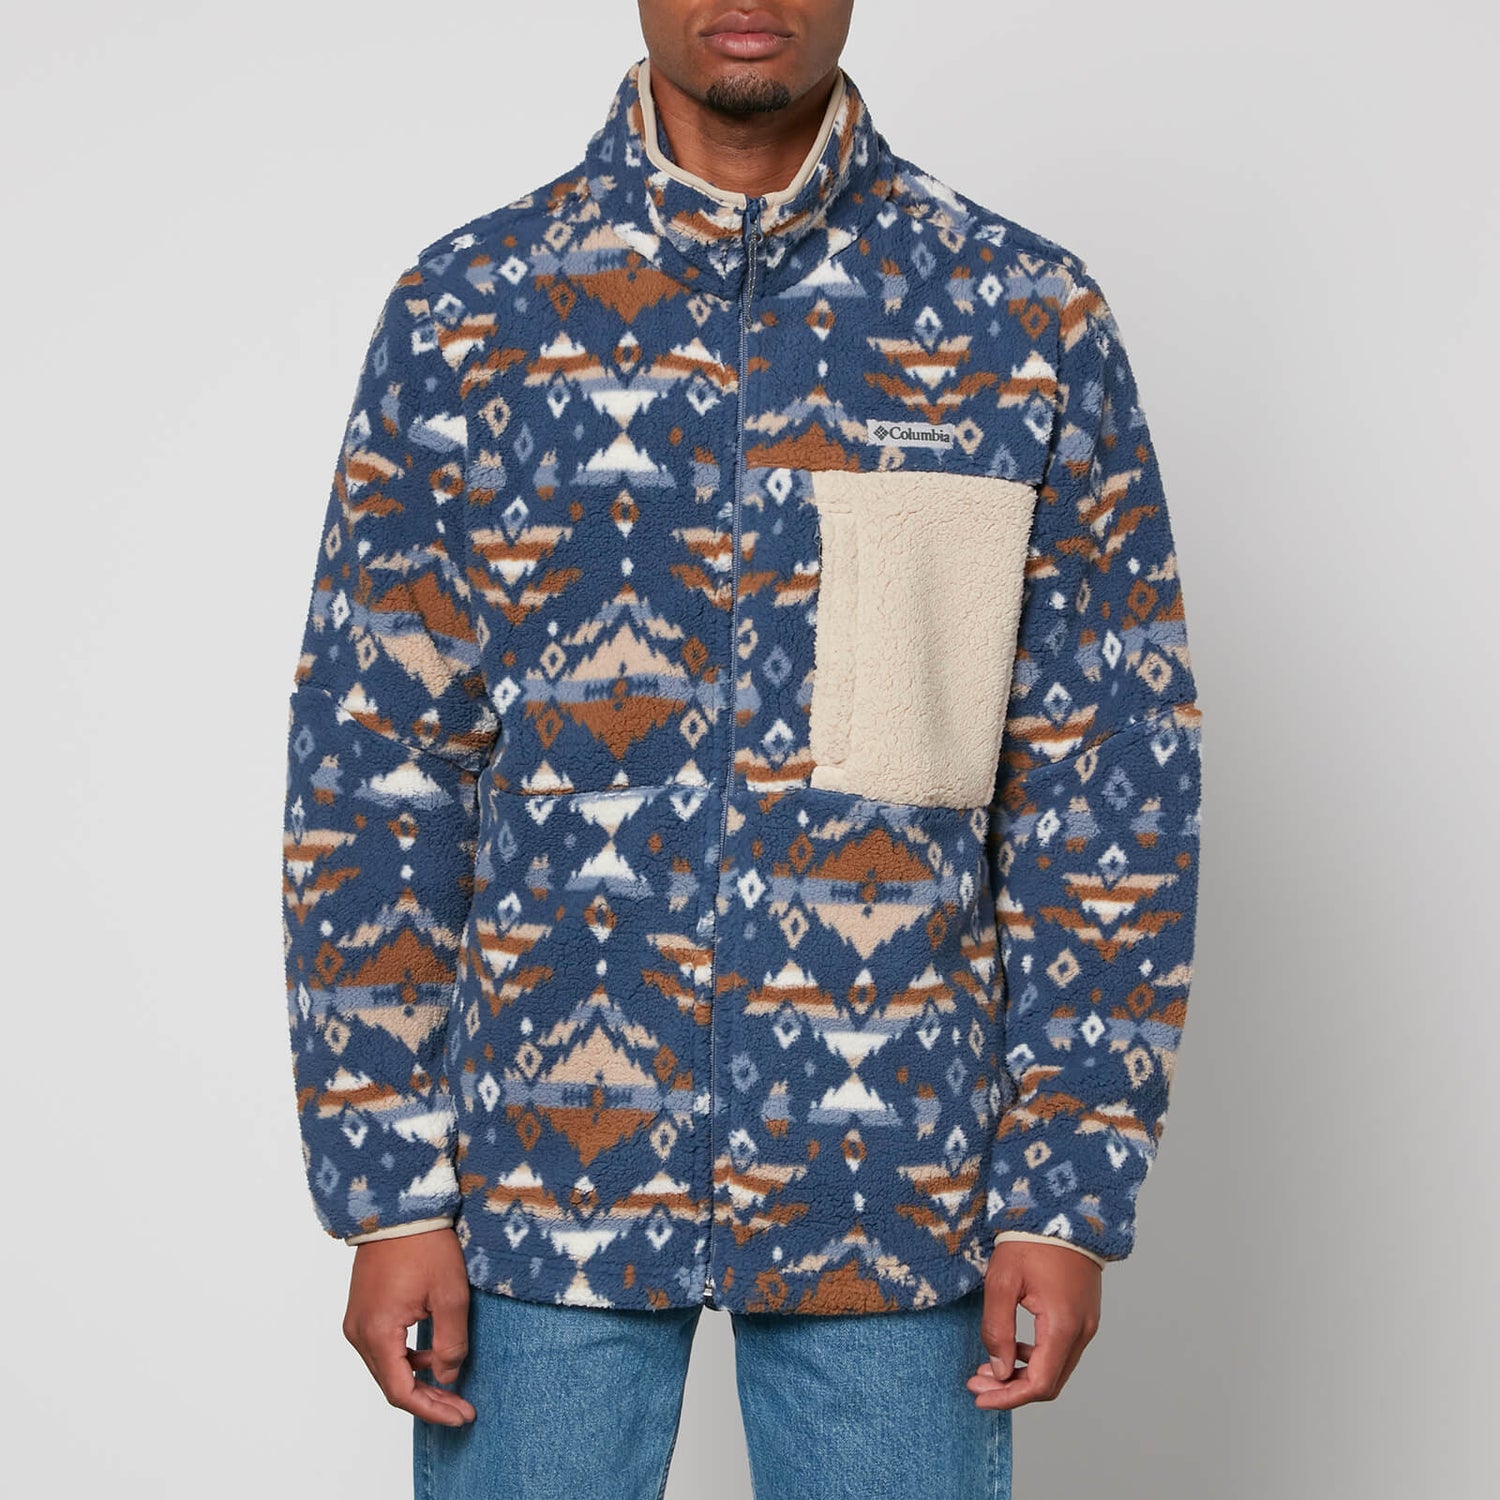 Columbia Mountainside Printed Full Zip Fleece Jacket - S